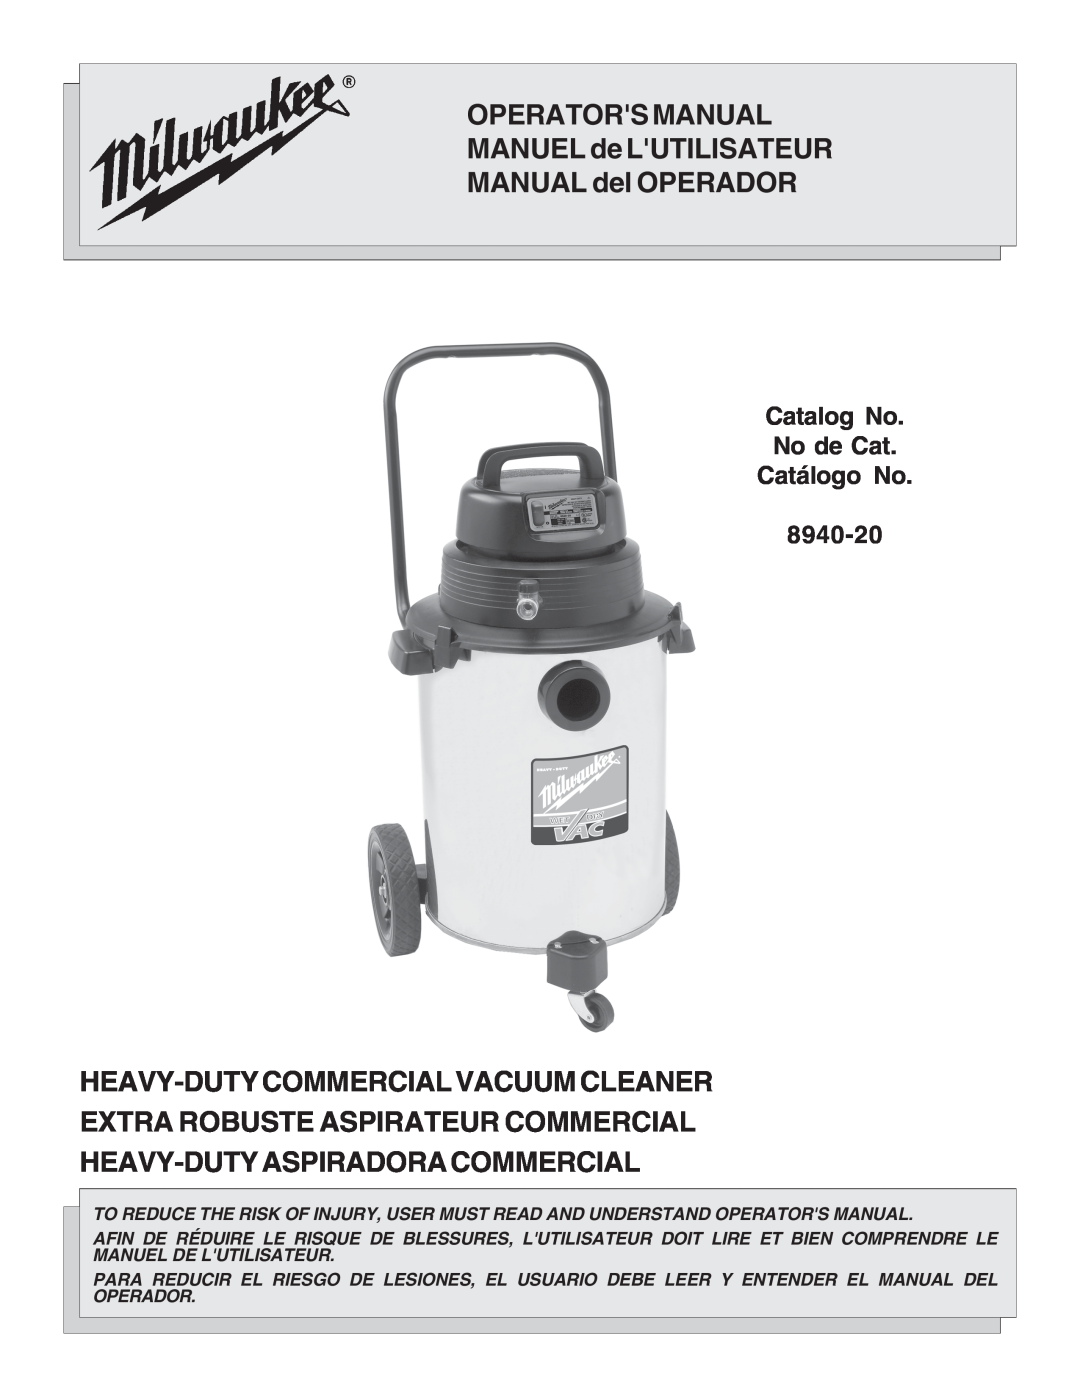 Intec 8940-20 manual OPERATORS MANUAL MANUEL de LUTILISATEUR, MANUAL del OPERADOR, Heavy-Dutycommercial Vacuum Cleaner 